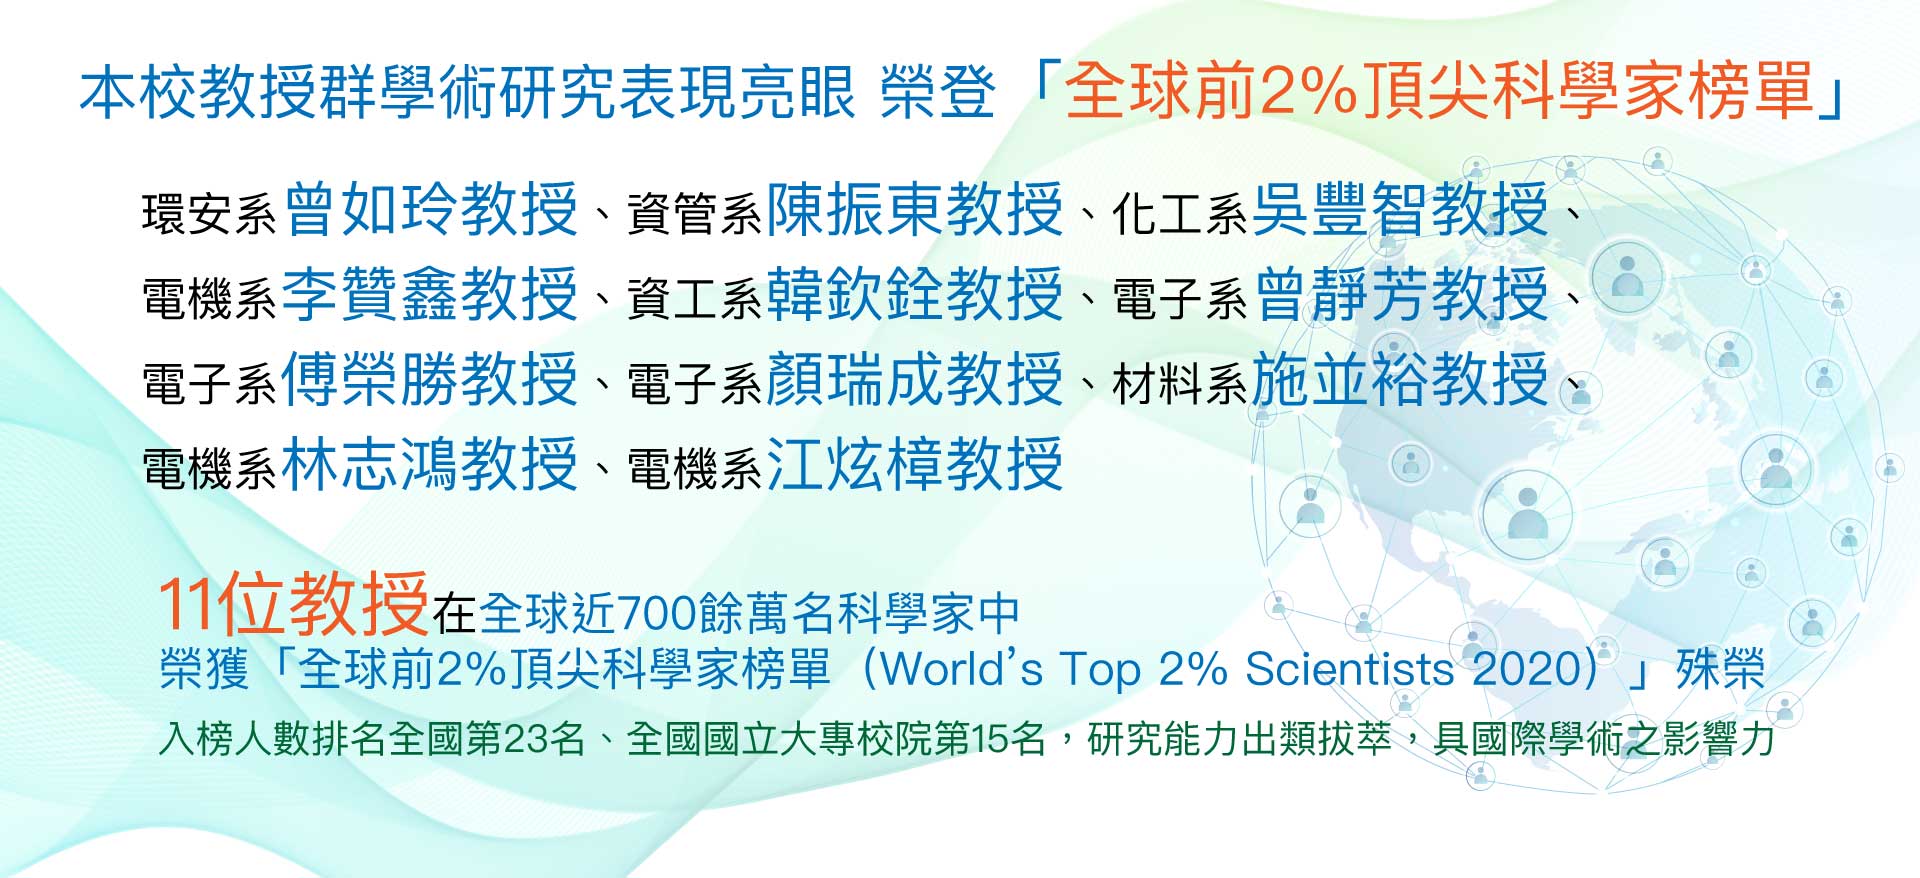 國立聯合大學教授群學術研究表現亮眼 榮登「全球前2%頂尖科學家榜單」